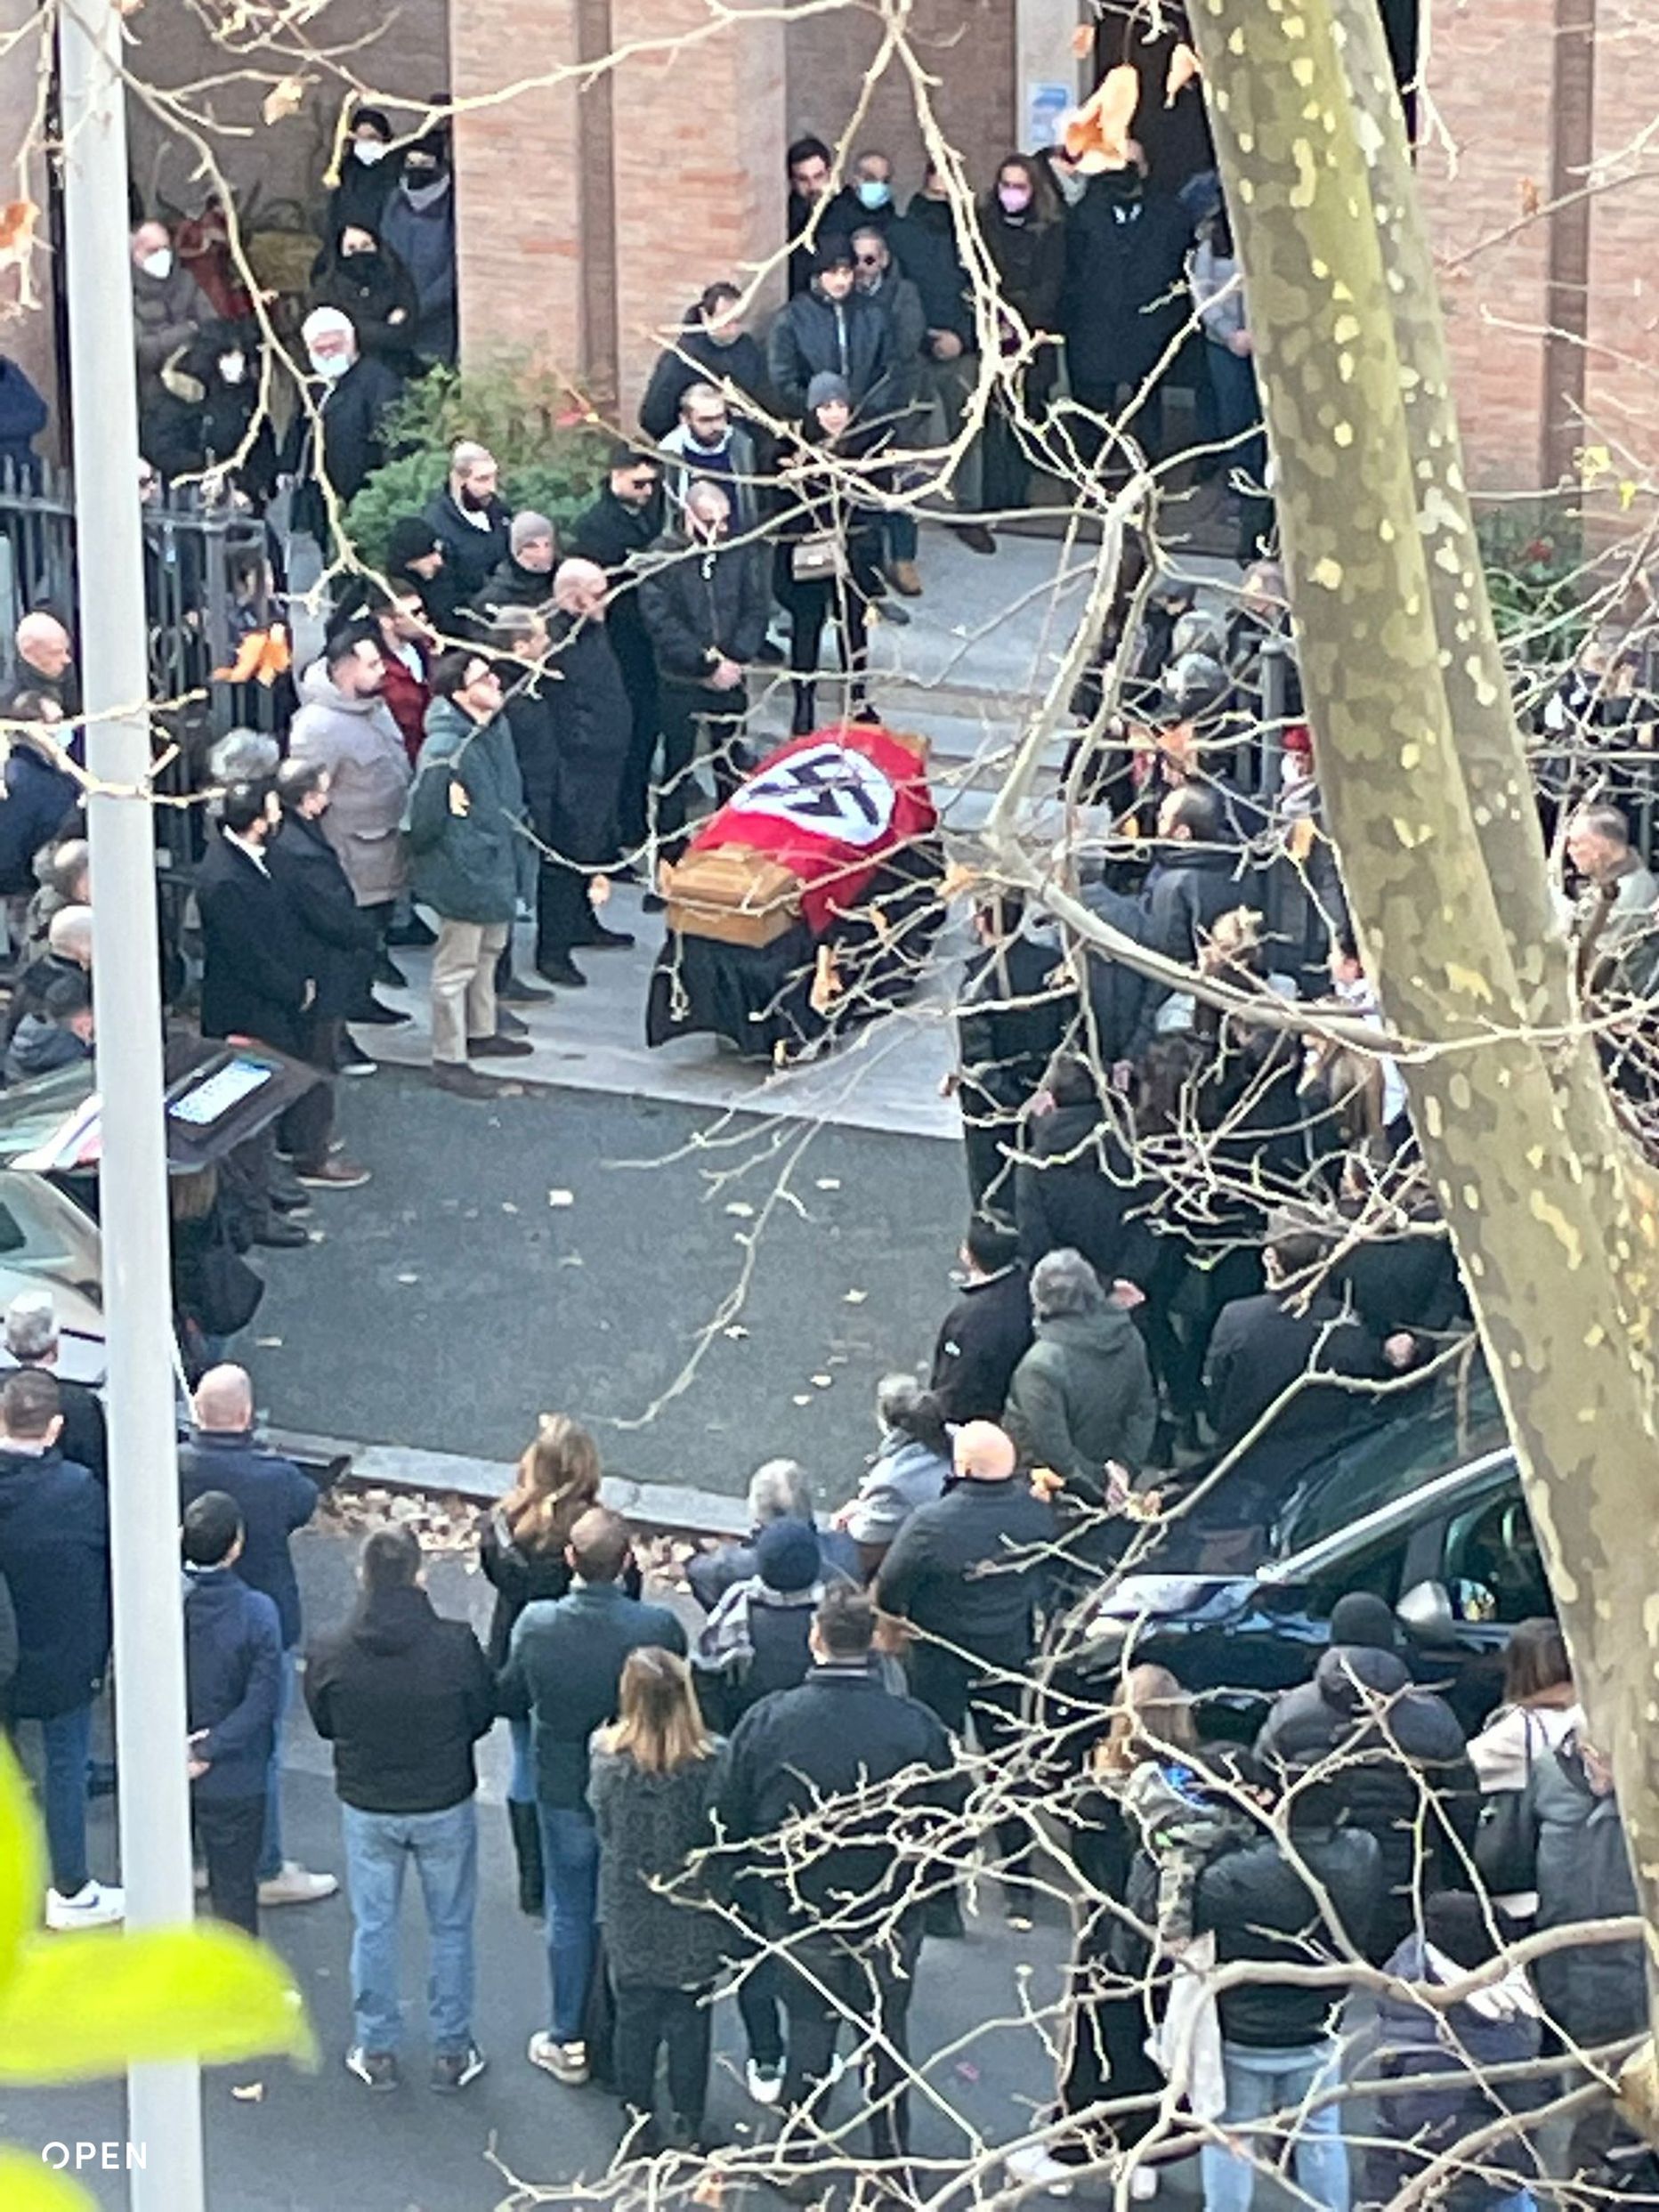 Itaalia uudisteportaal Open avaldas fotod, millel on näha Roomas 11. jaanuaril toimunud paremäärmuslase matust ja ta kirstul haakristilippu